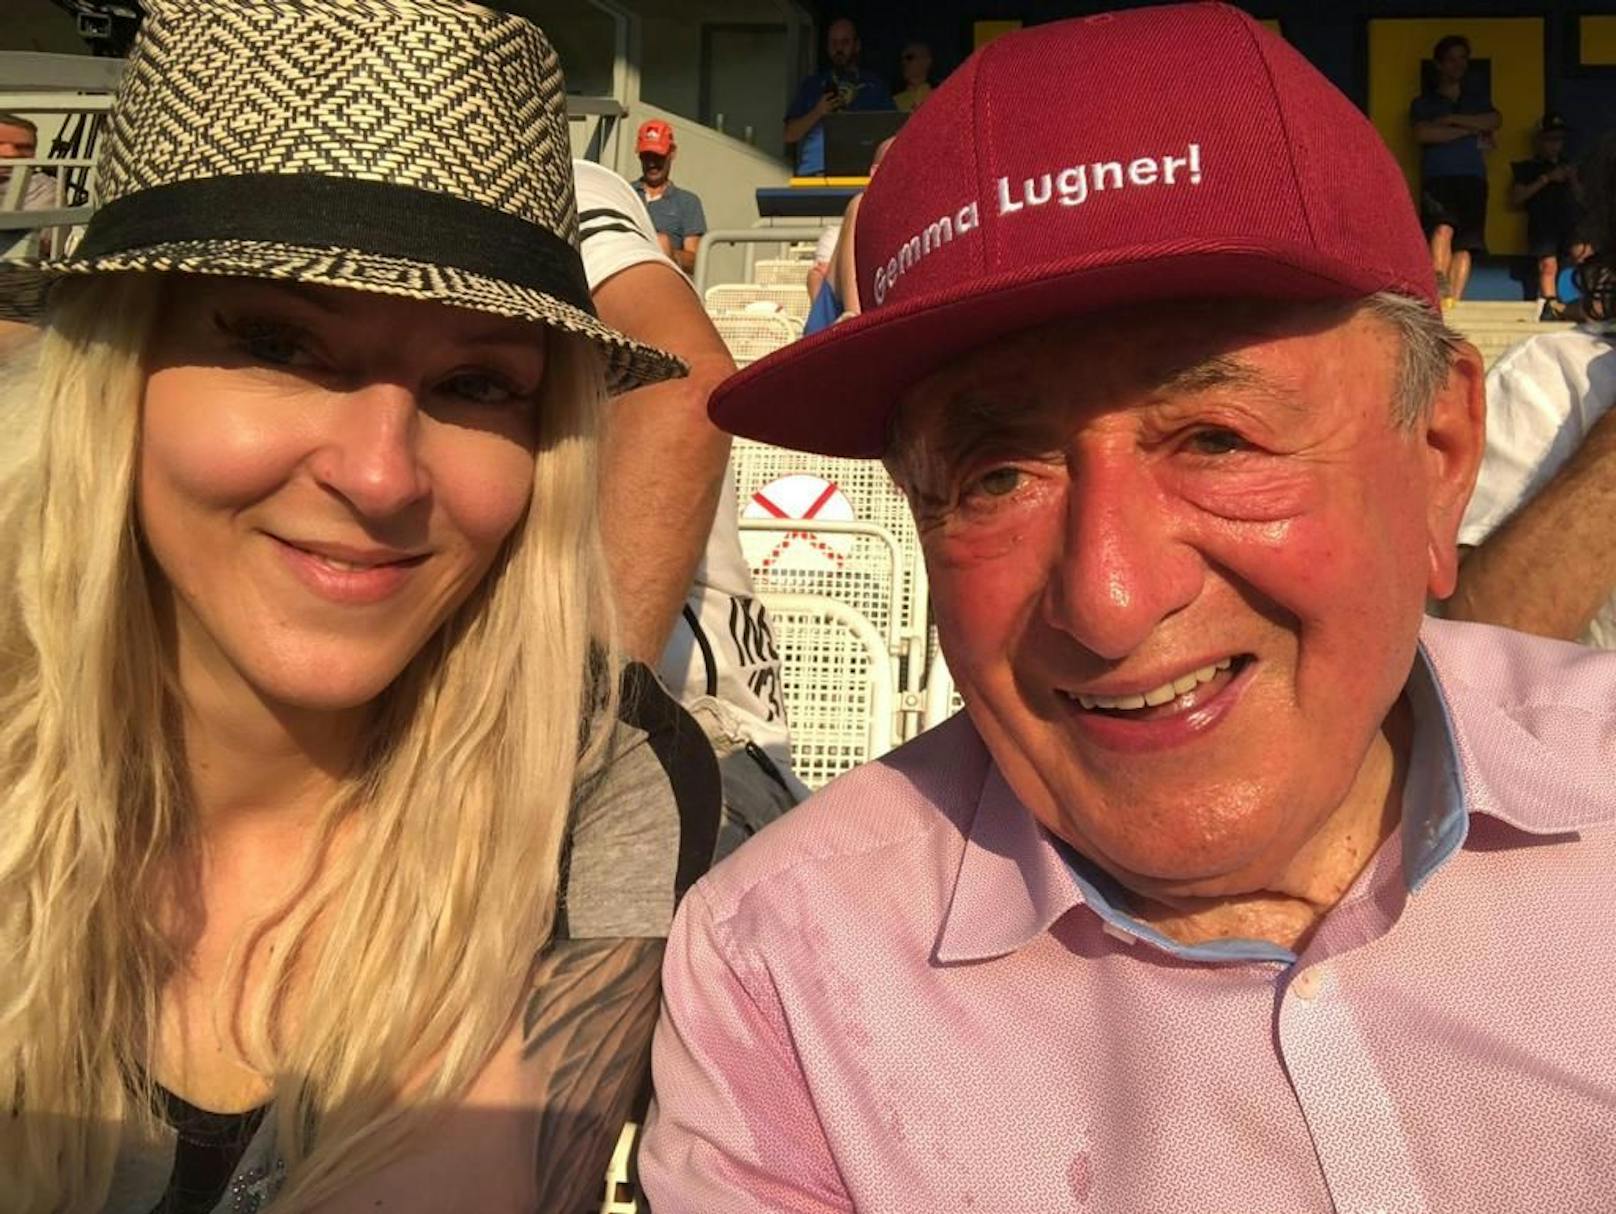 Richard Lugner und seine Freundin Simone "Bienchen" sind sehr glücklich.&nbsp;